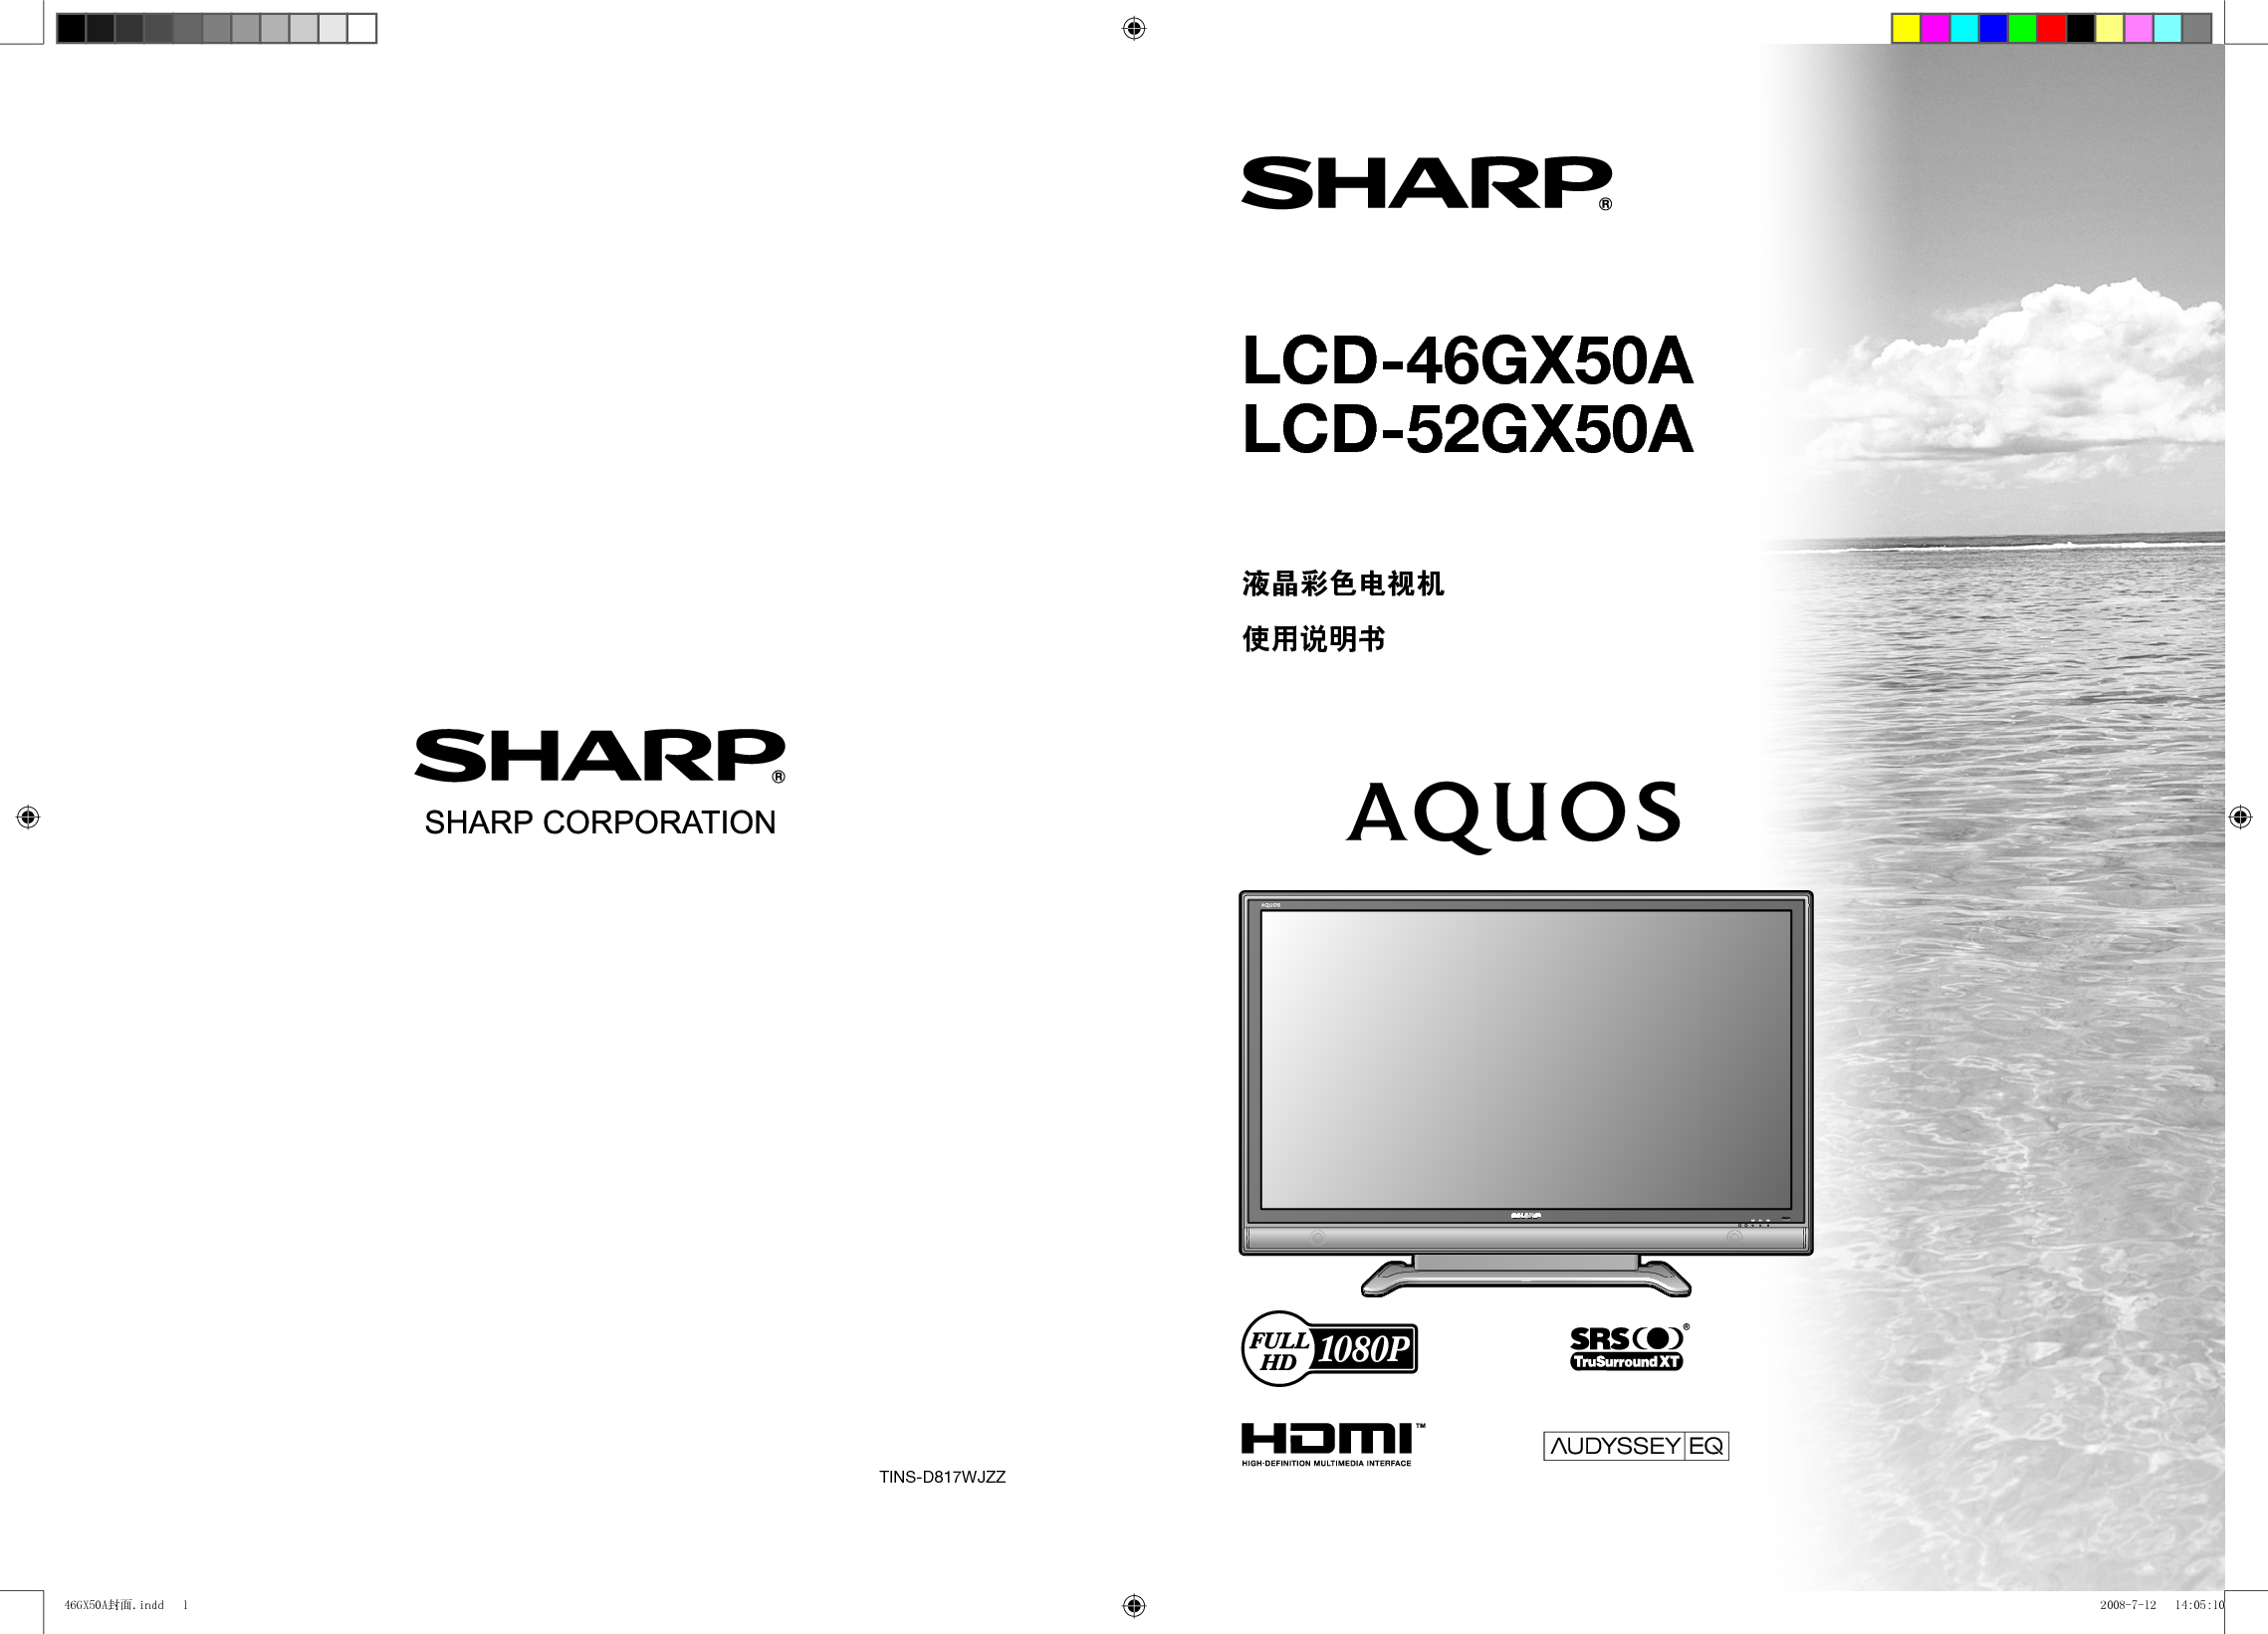 夏普 Sharp LCD-46GX50A 说明书 封面